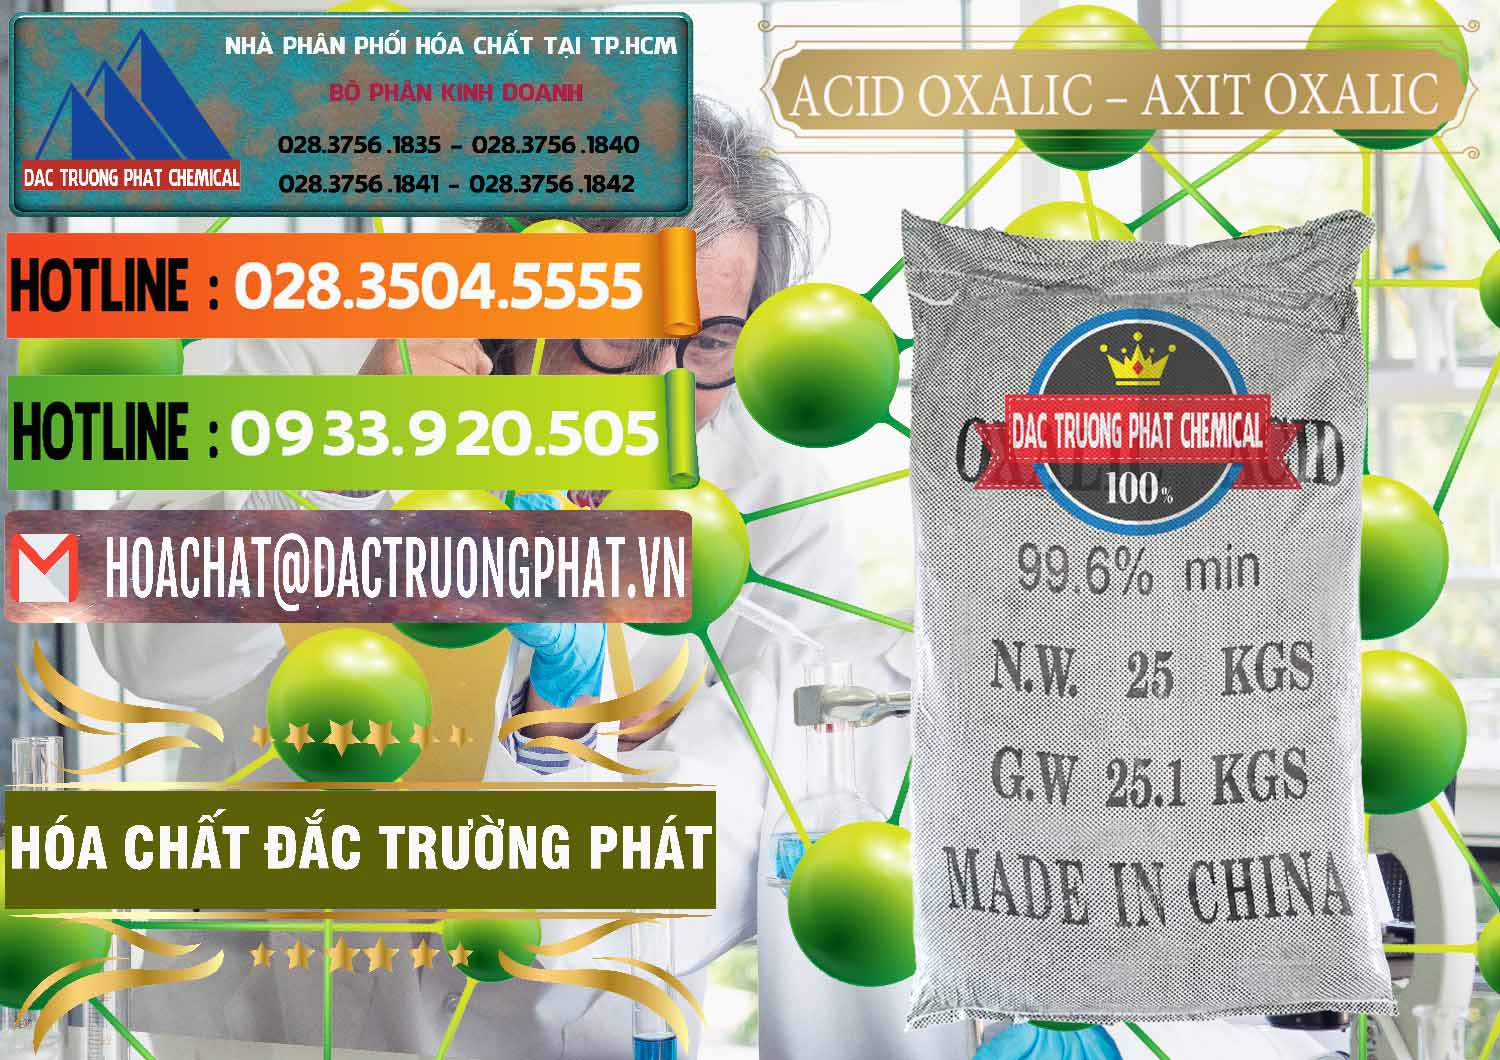 Chuyên bán và phân phối Acid Oxalic – Axit Oxalic 99.6% Trung Quốc China - 0014 - Nơi chuyên cung cấp - nhập khẩu hóa chất tại TP.HCM - cungcaphoachat.com.vn